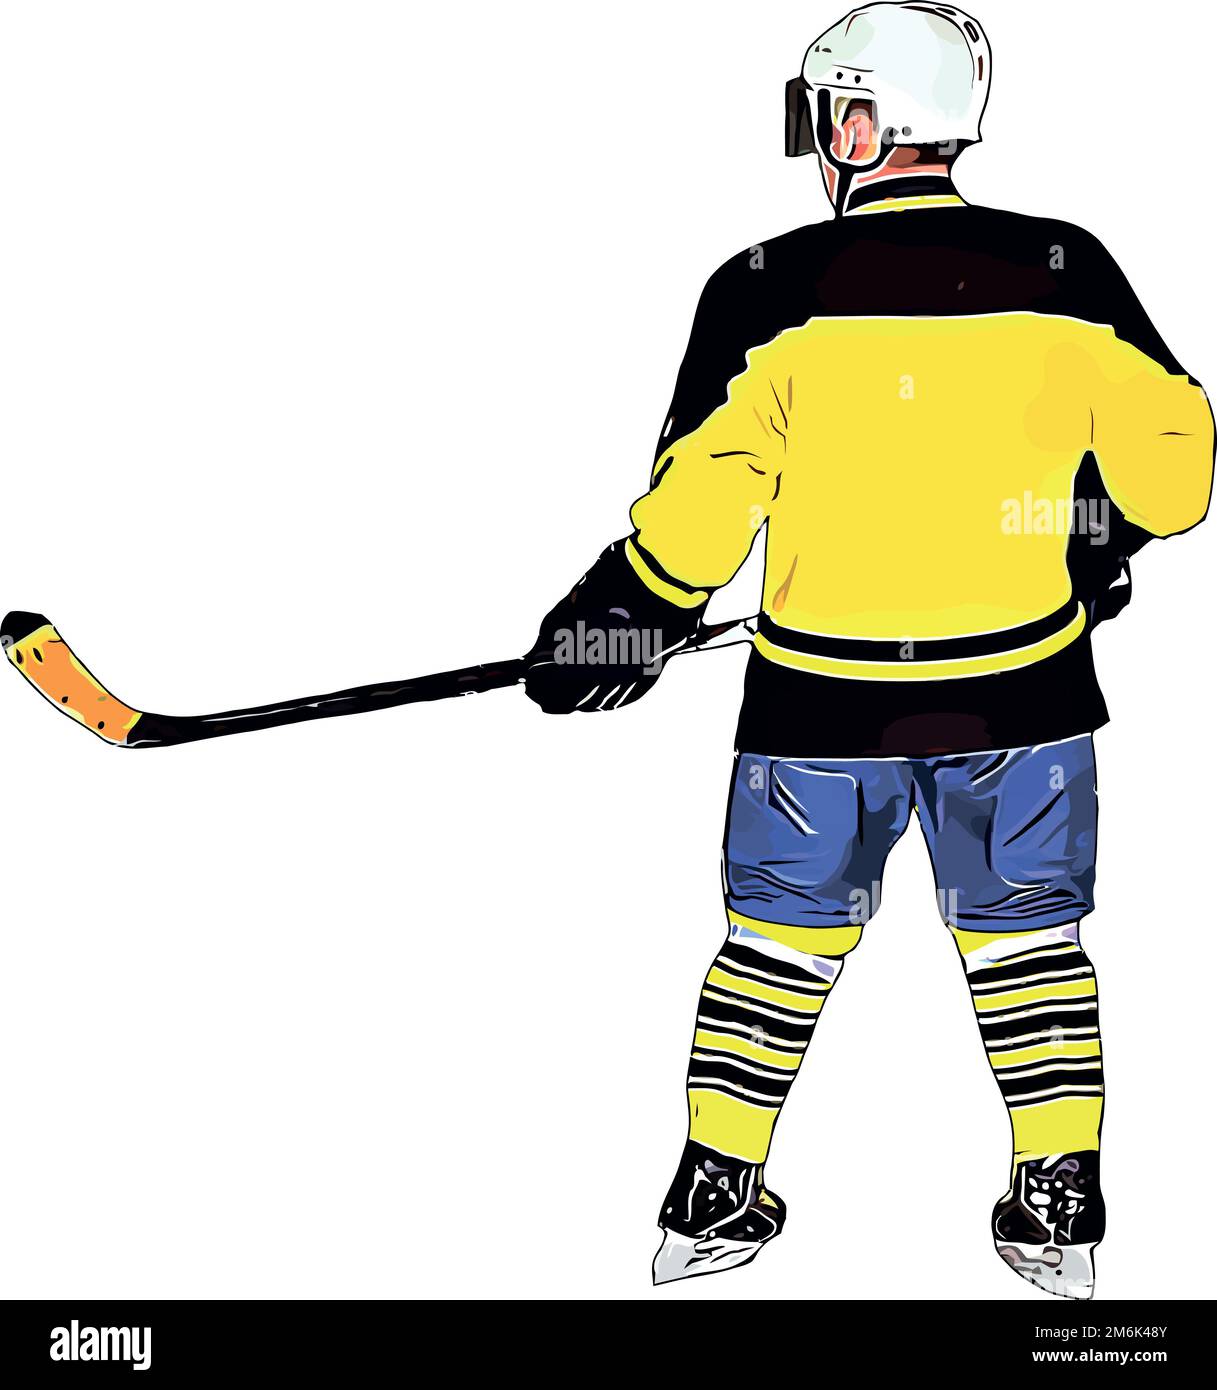 Immagine a colori del giocatore della squadra di hockey Foto Stock